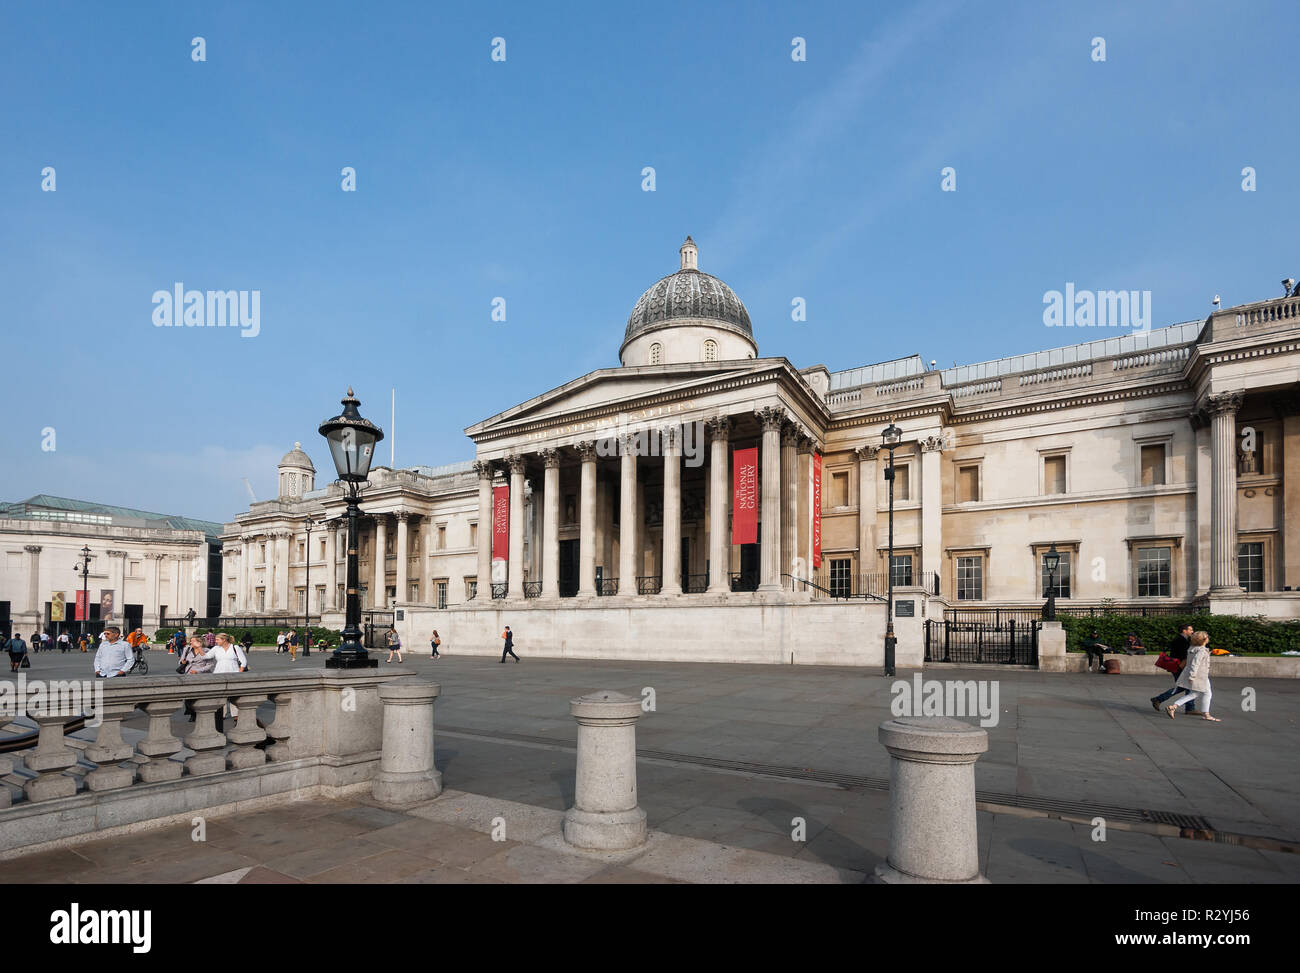 La Galería Nacional edificio neoclásico en la ciudad de Westminster, Londres, vista desde el exterior y la Fachada del museo en Trafalgar Square Foto de stock